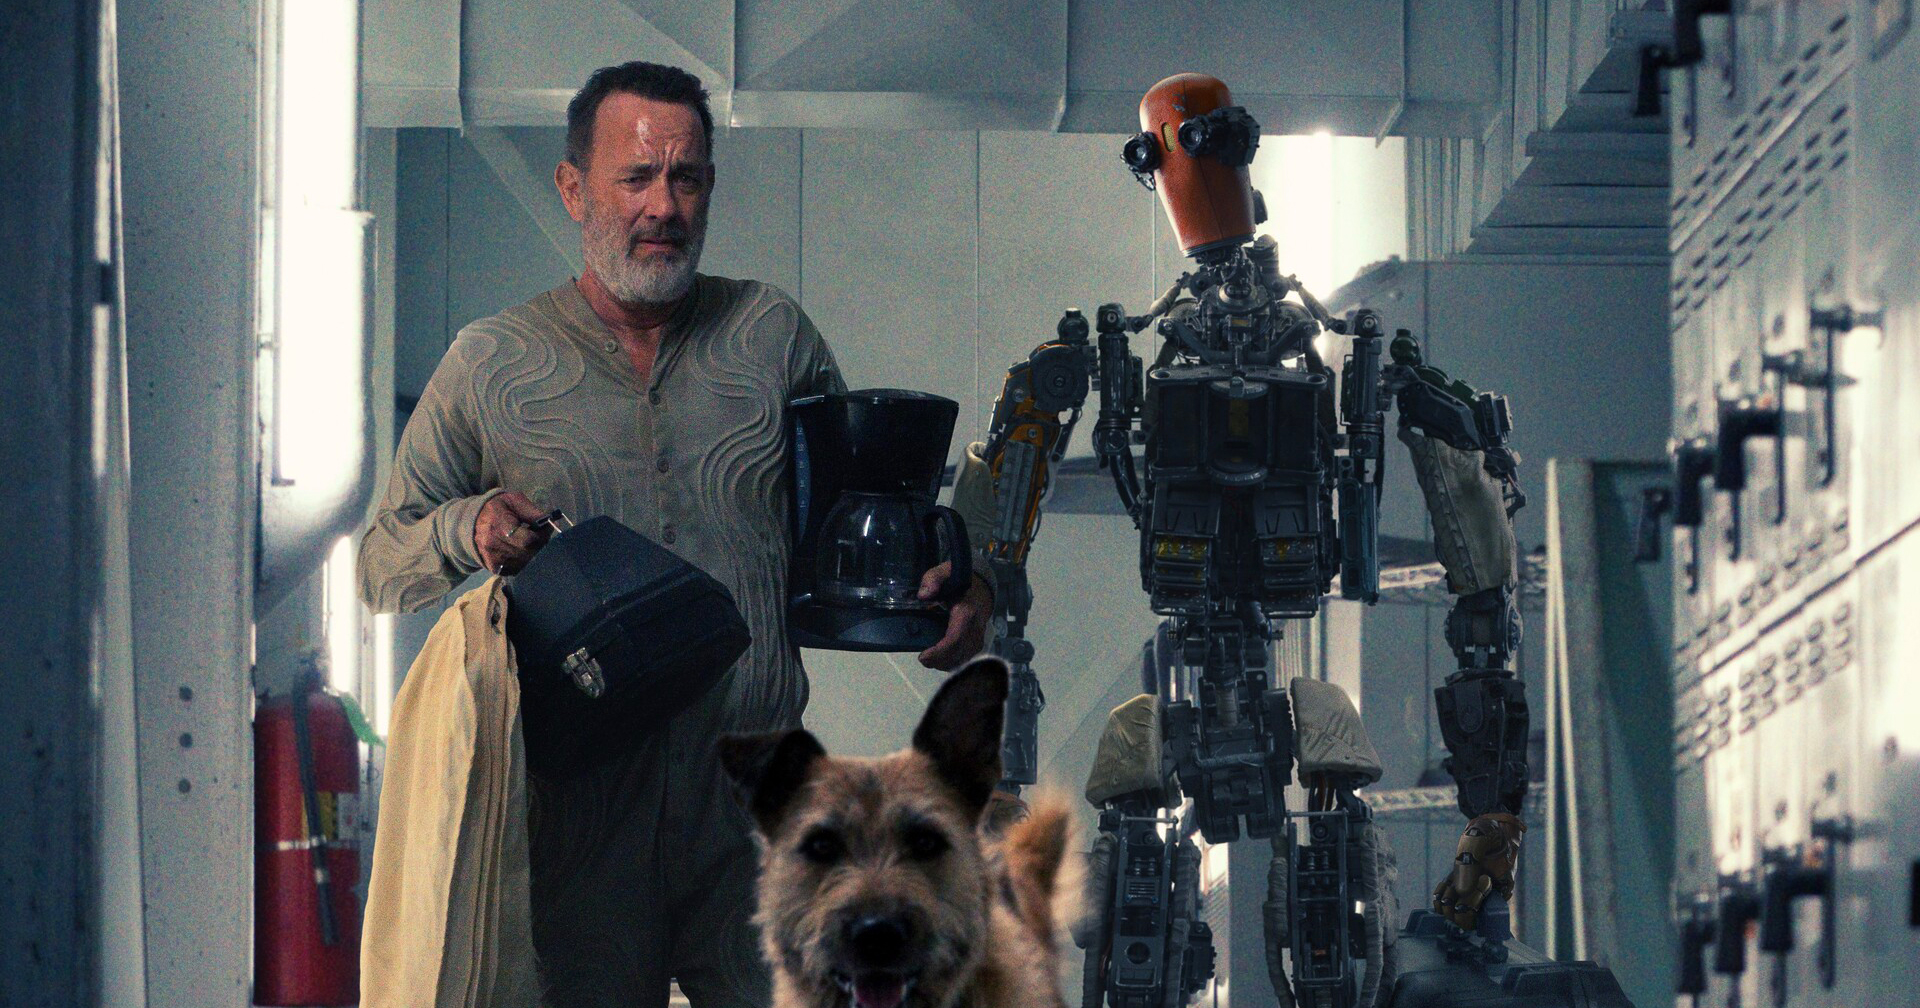 ทอม แฮงค์ส ออกเดินทางพร้อมหุ่นยนต์และสุนัข ในภาพแรกของ ‘Finch’